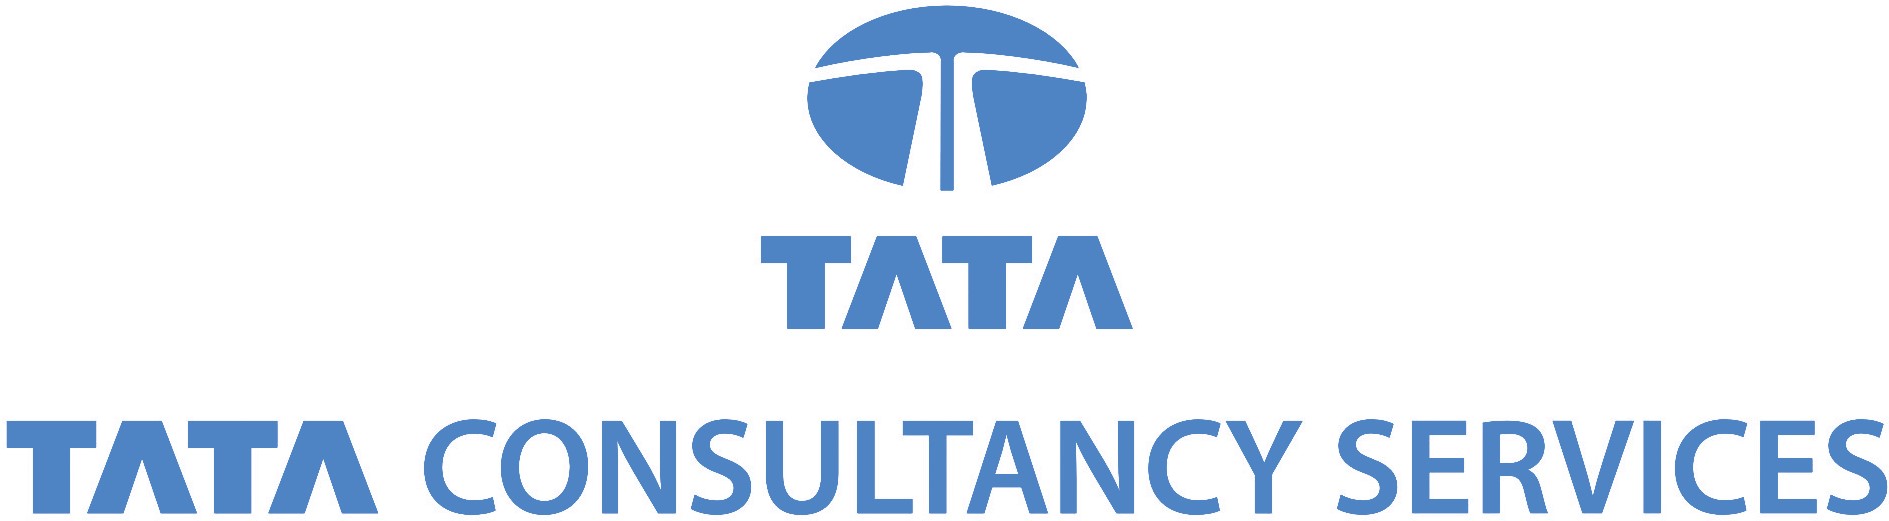 TATA Logo